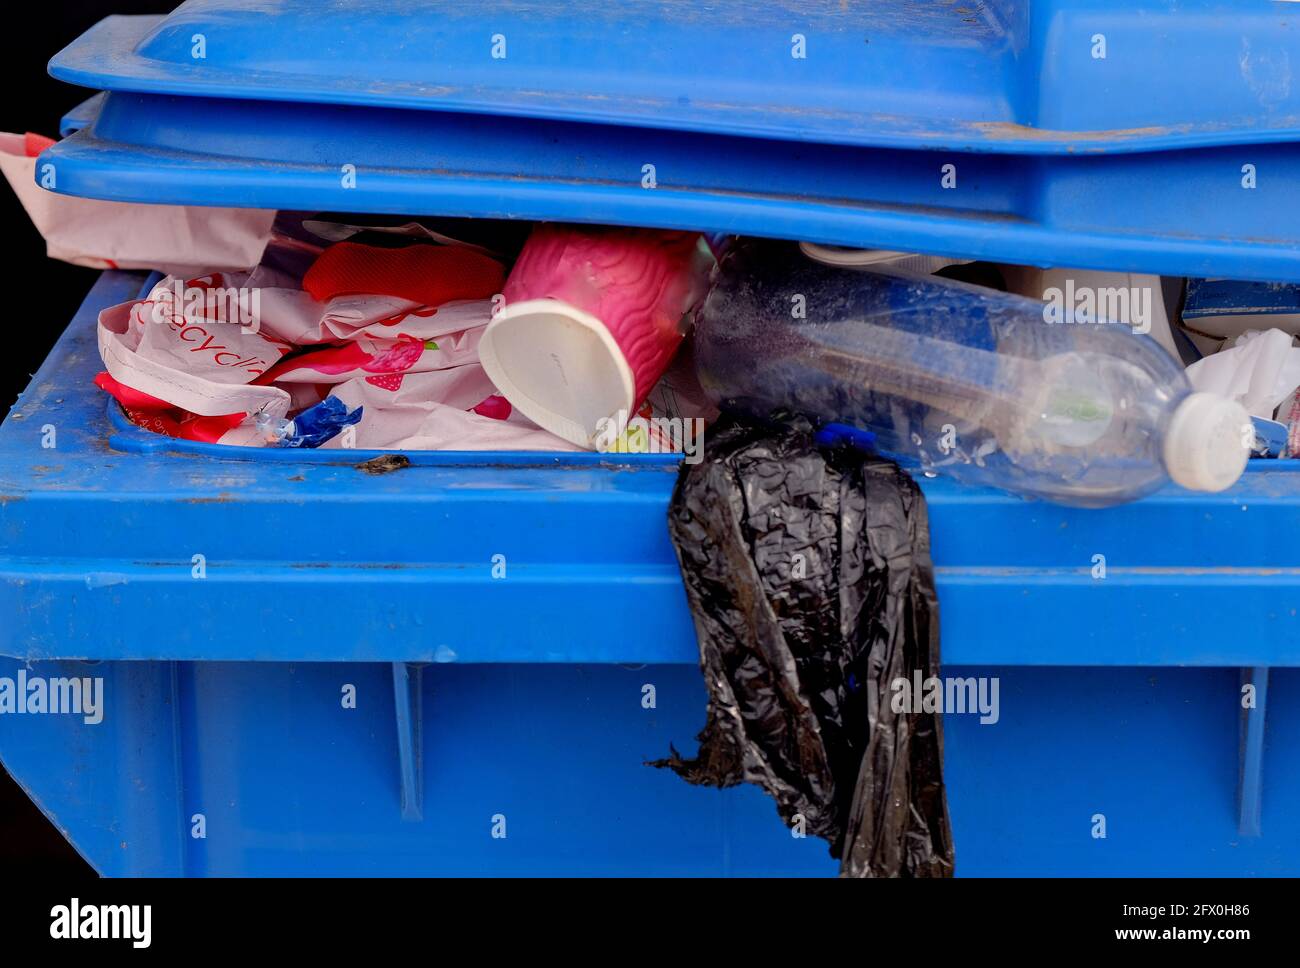 Abfalleimer oder Müllcontainer, die mit Müll überlaufen sind. Stockfoto